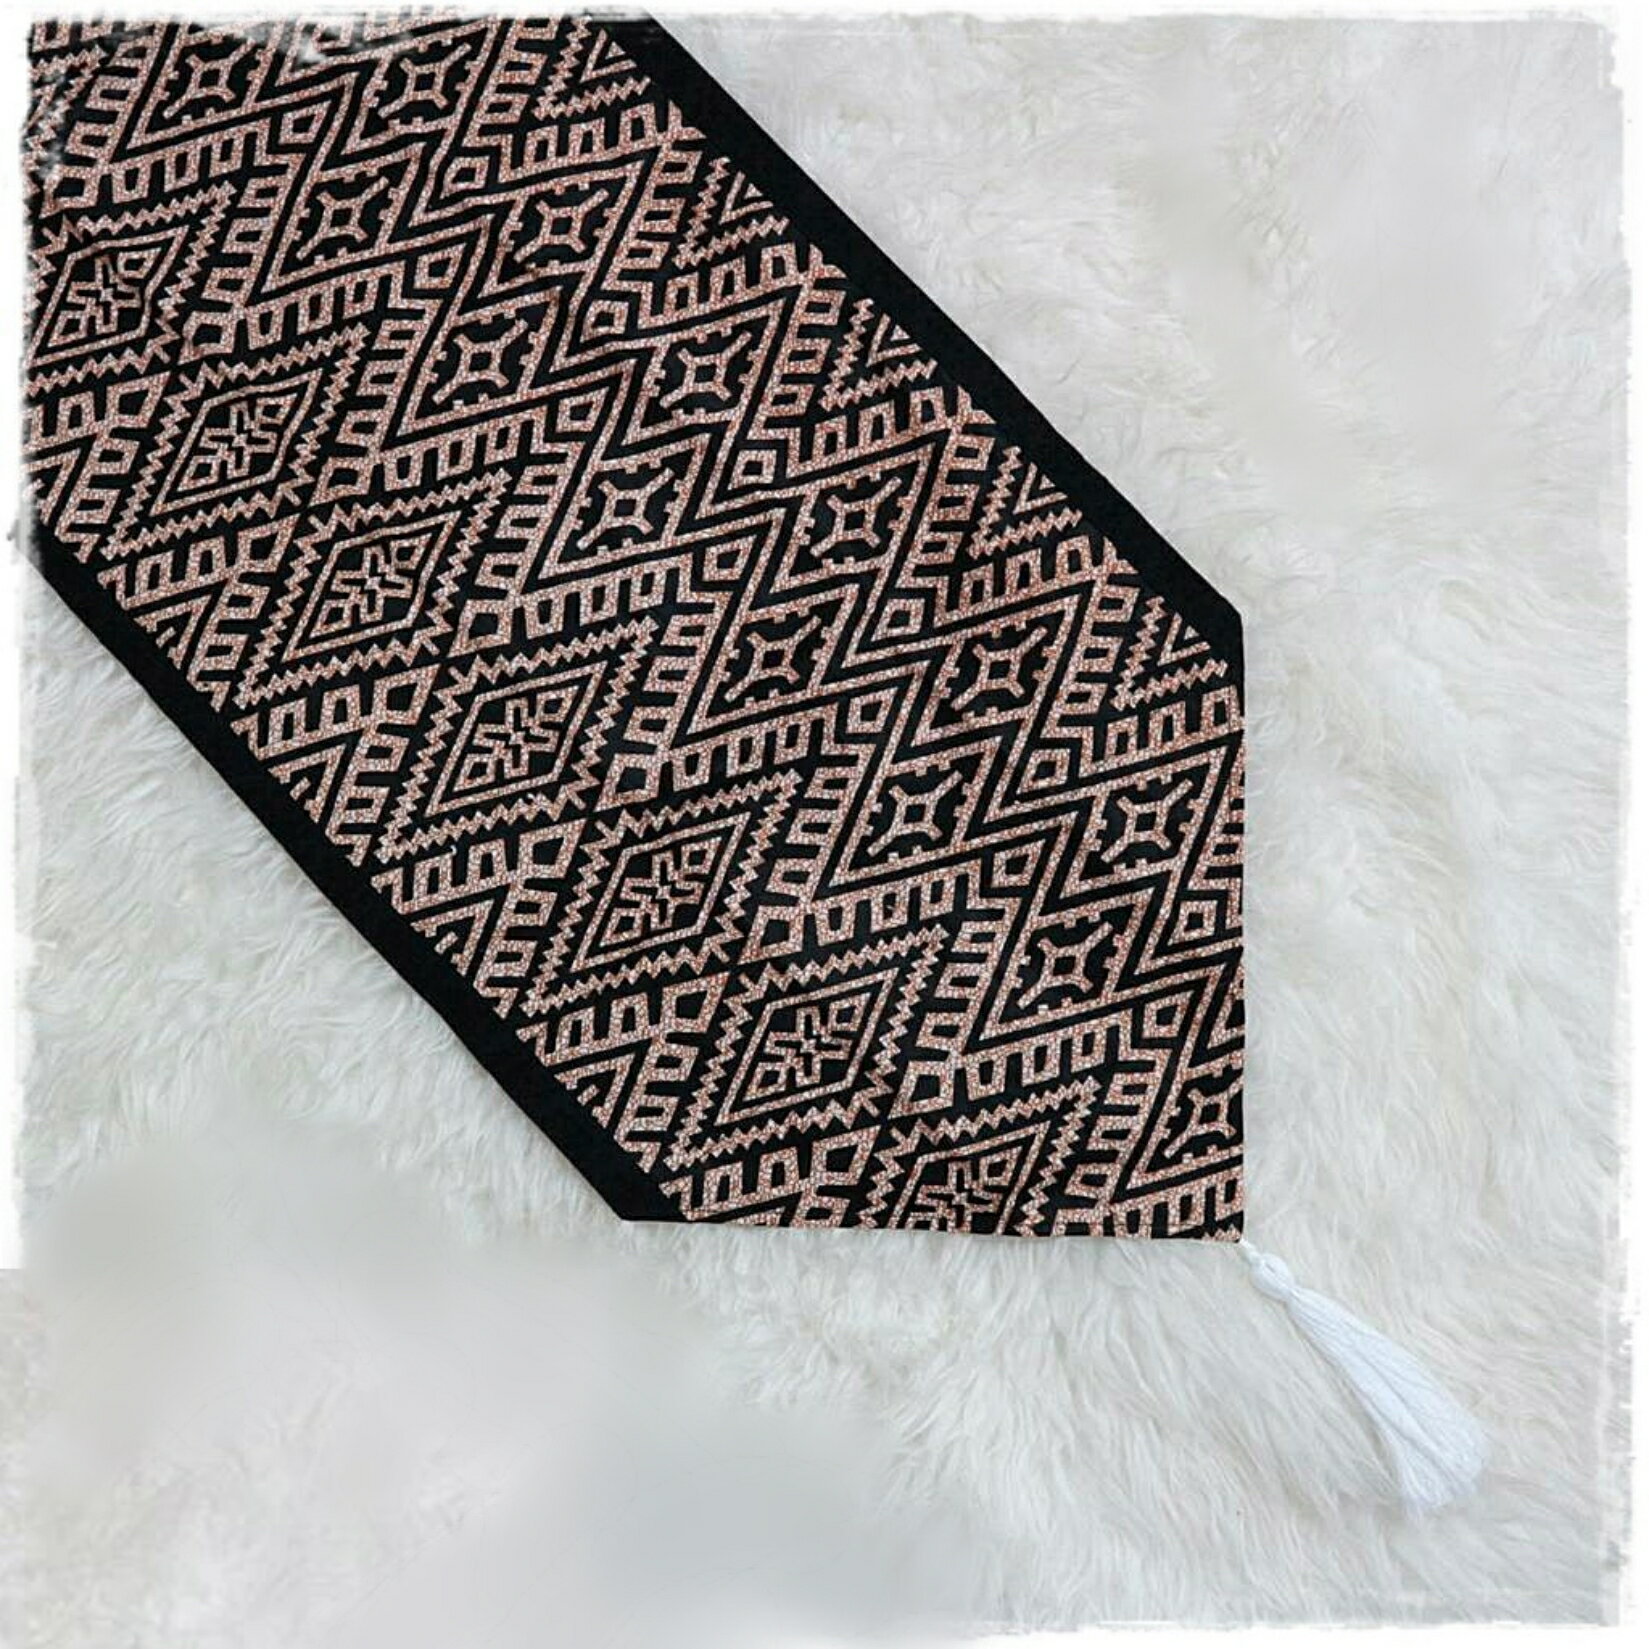 バティック Batik BATIK テーブルランナー テーブル 黒 ダイヤ 150x40cm インドネシア ジャワ 伝統 染め おしゃれ ヴィンテージ風 グランピング 送料無料 キャンプ かっこいい 絨毯 オールシーズン アウトドア 折りたためる リビング フローリング 異国風 アジアン